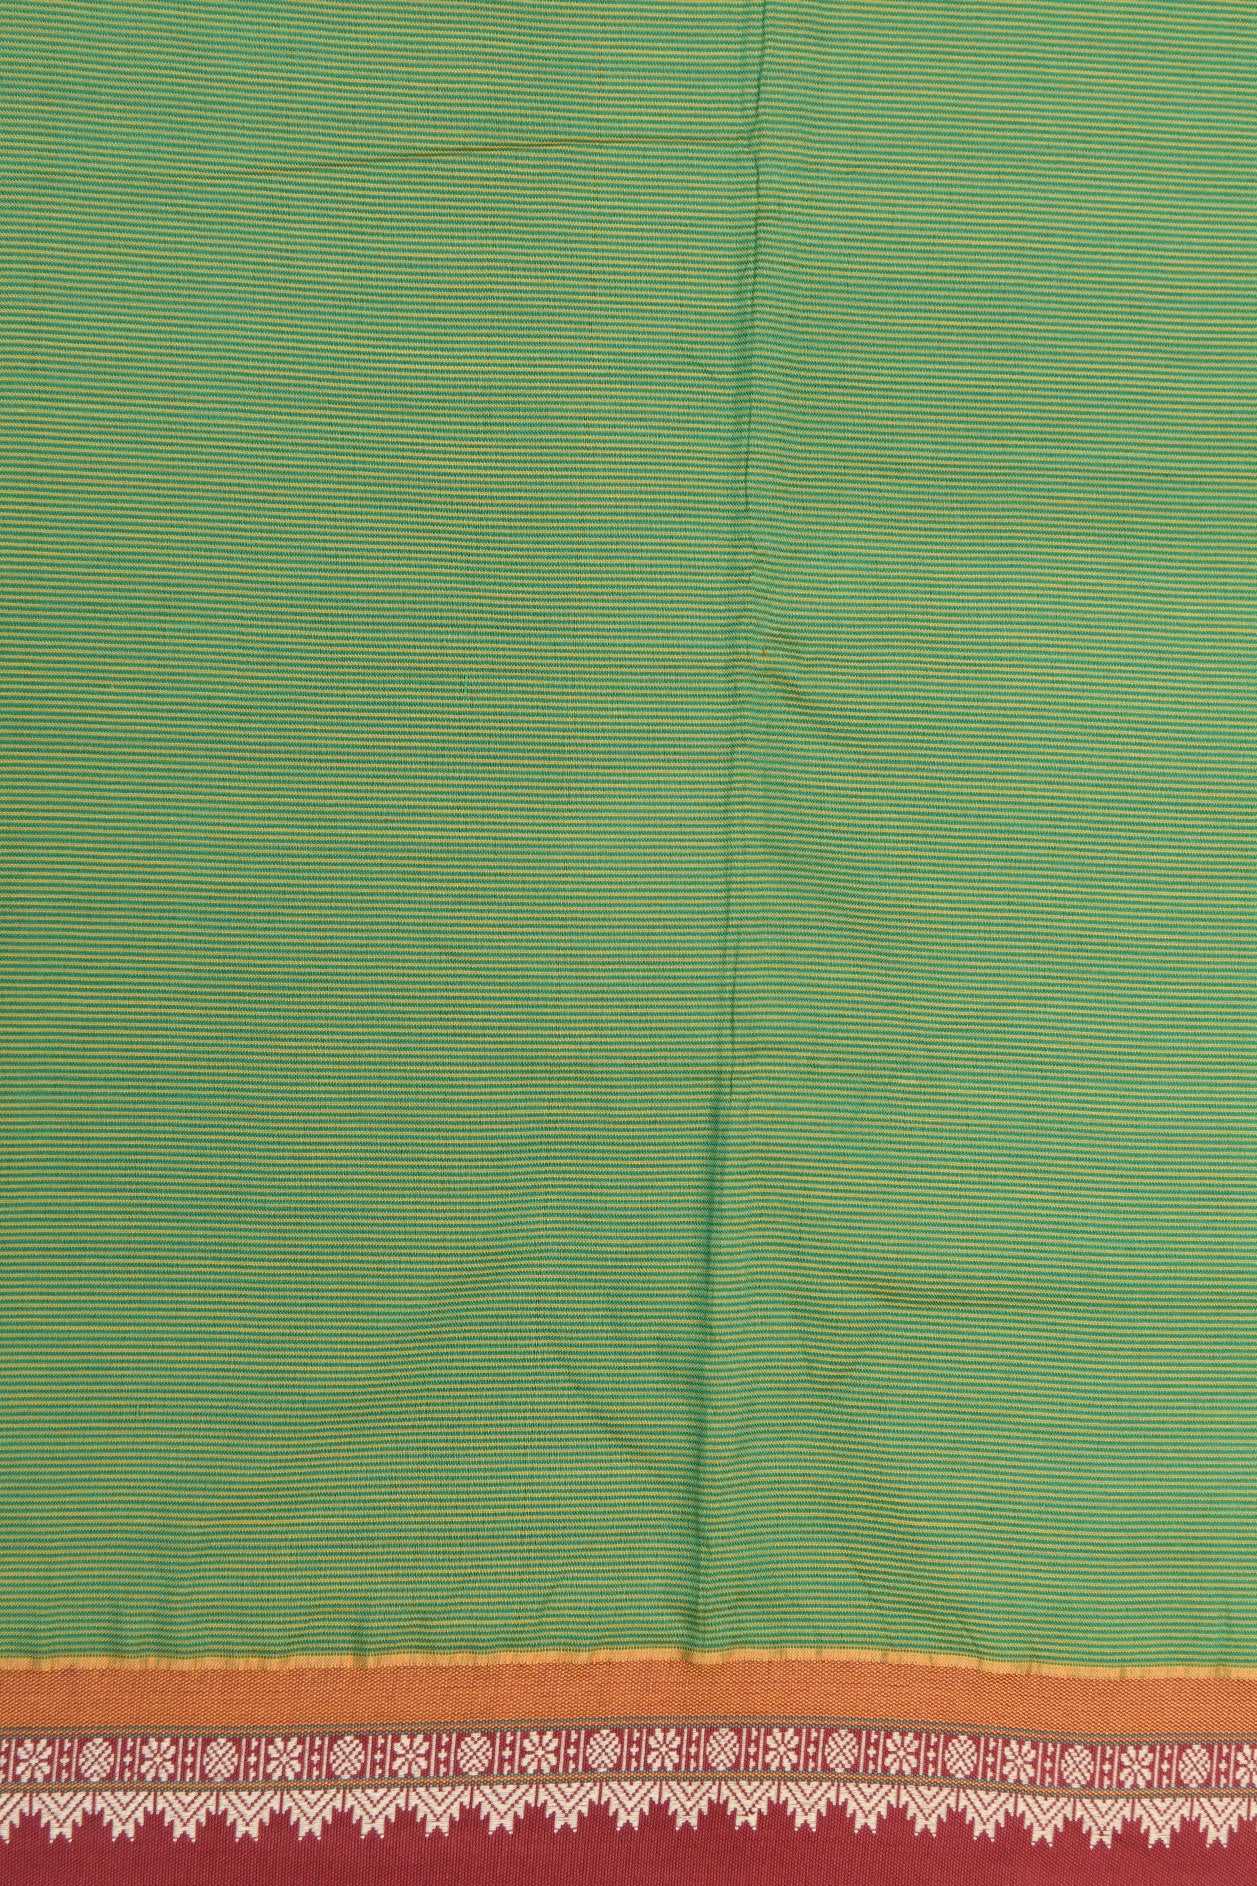 Thread Work Border In Stripes Green Dharwad Cotton Saree